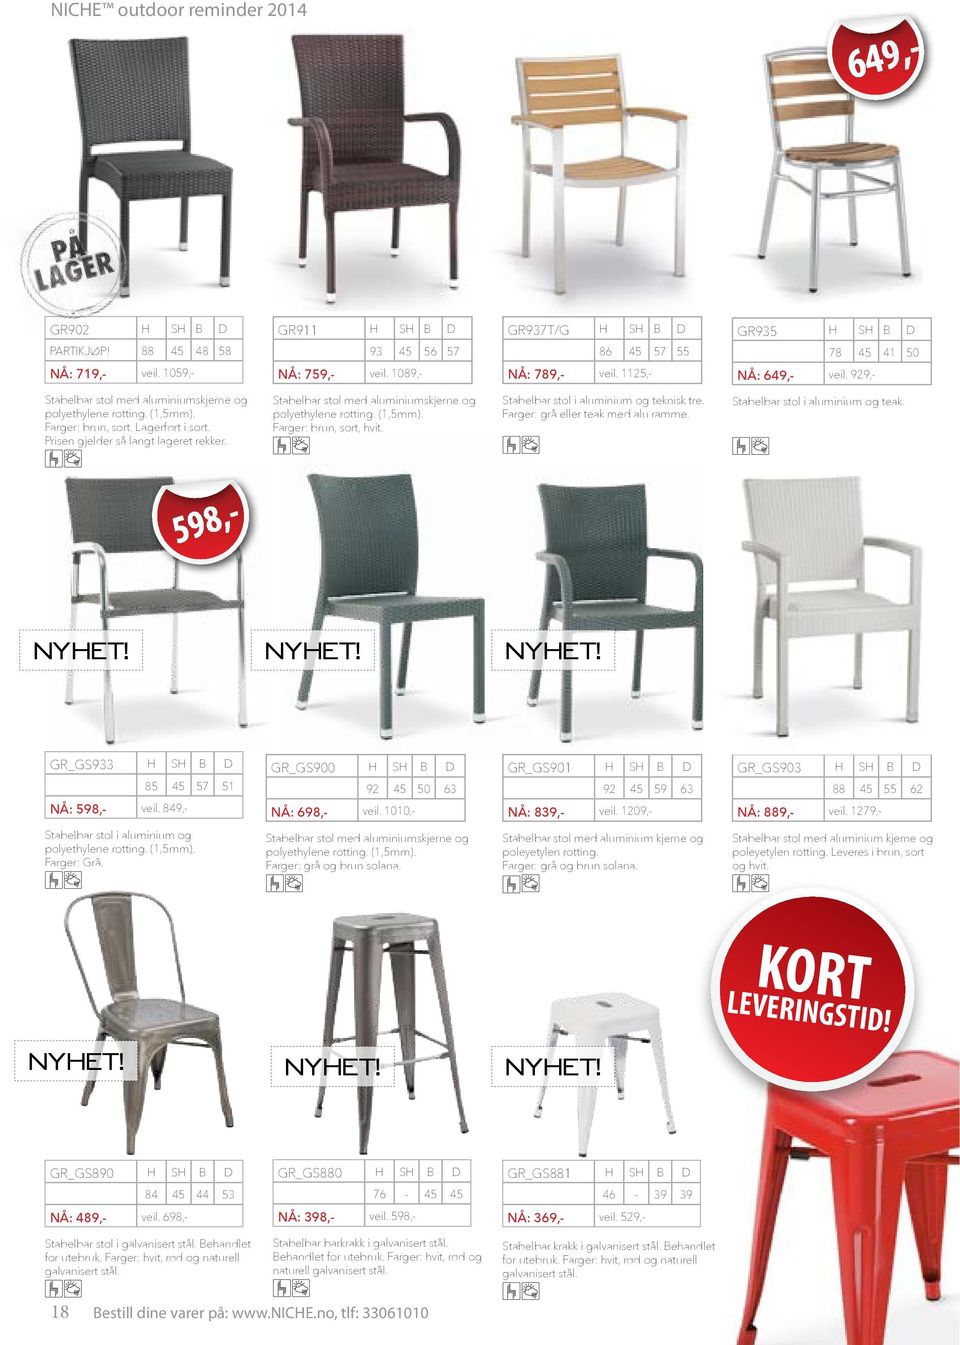 (1,5mm). Farger: brun, sort, hvit. D GR935 H SH B 78 45 NÅ: 649,- veil. 929,- 57 55 Stabelbar stol i aluminium og teknisk tre. Farger: grå eller teak med alu ramme.